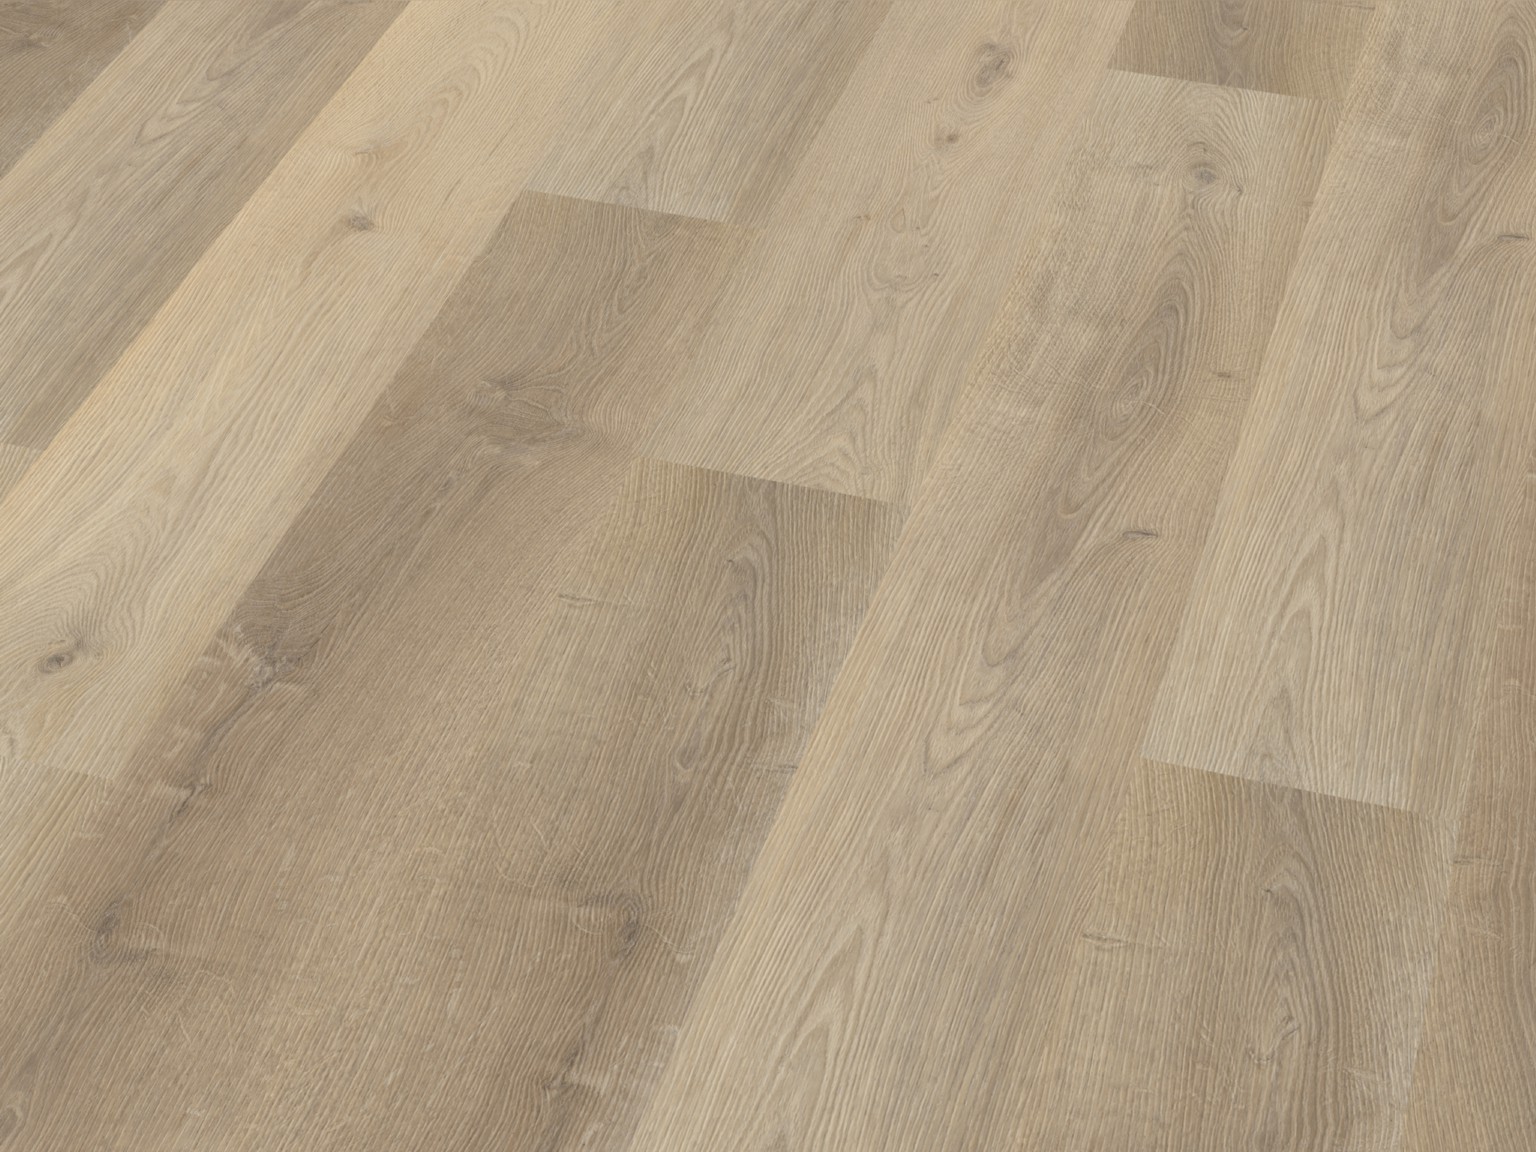 Floorlife Collection Db Light Oak - Houten Vloeren Vloeren - Multiplank - Laminaat - PVC Vloeren - Traprenovatie - Zelliges | Houtensteen.nl